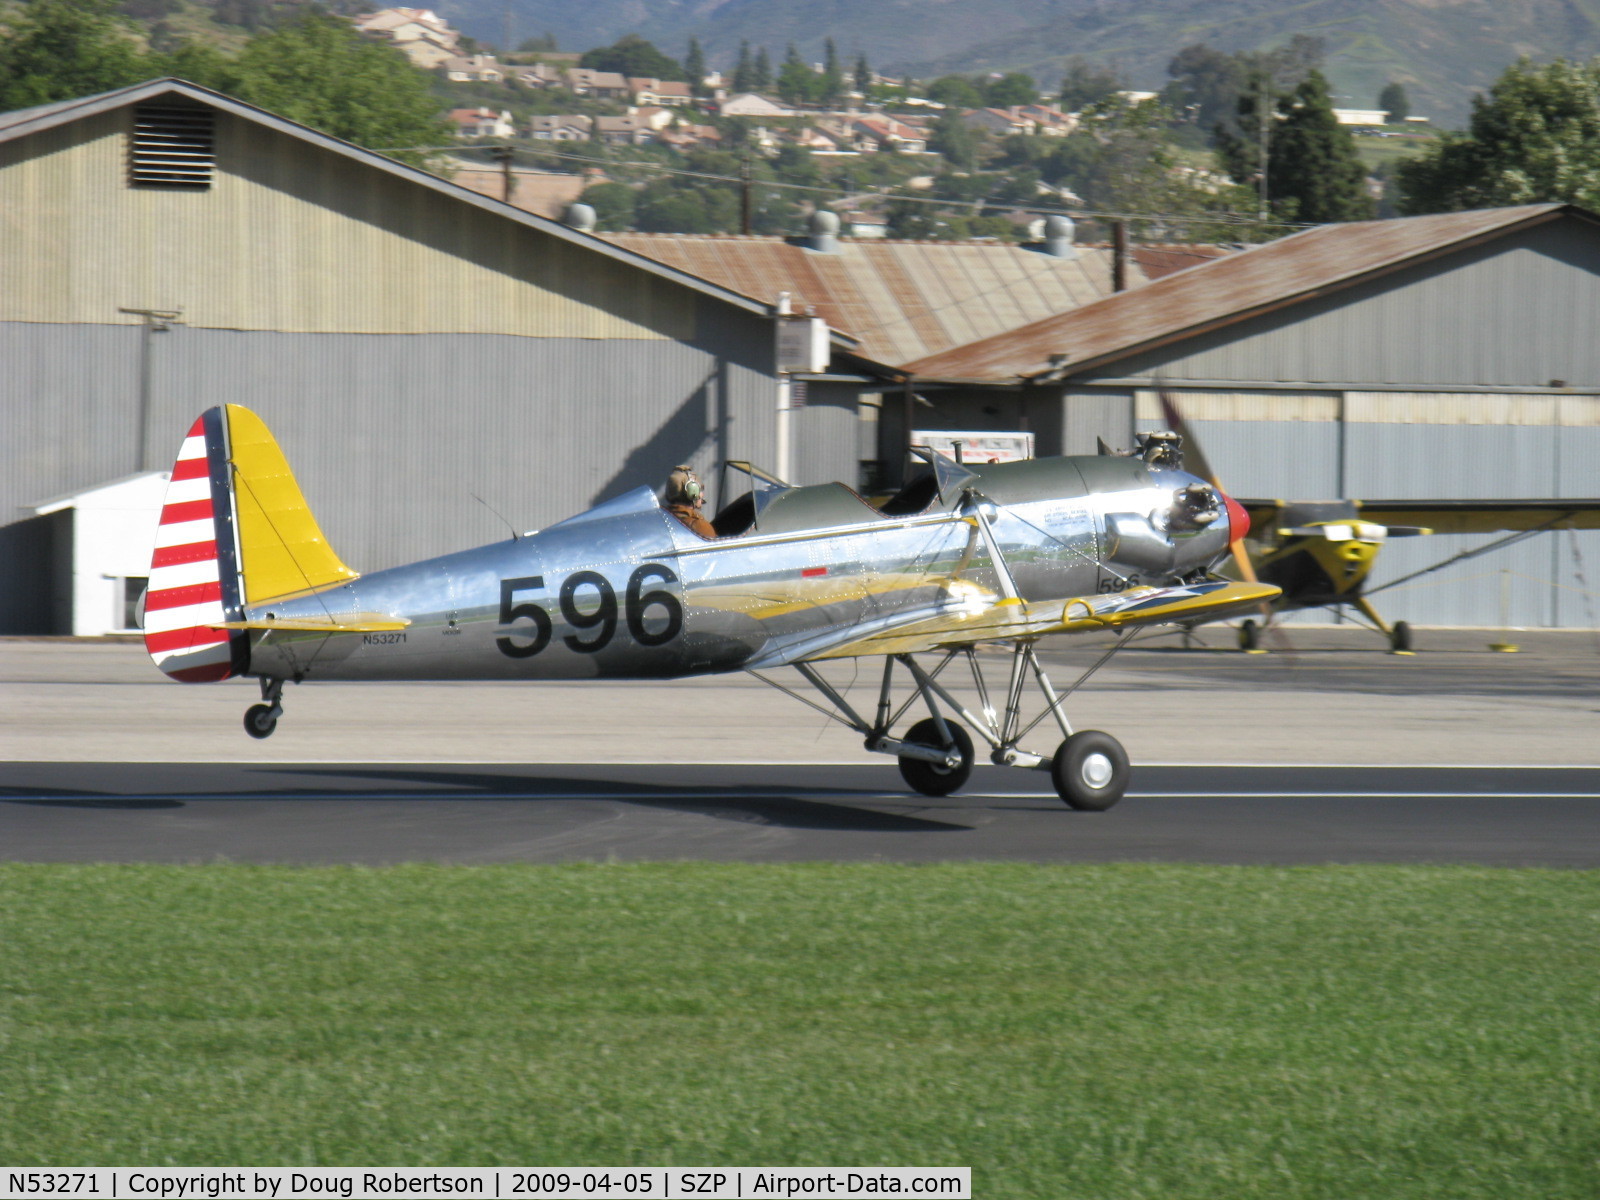 N53271, 1941 Ryan Aeronautical ST3KR C/N 1625, Ryan Aeronautical ST-3KR as PT-22, Kinner R5-540-1 160 Hp radial, landing roll Rwy 04